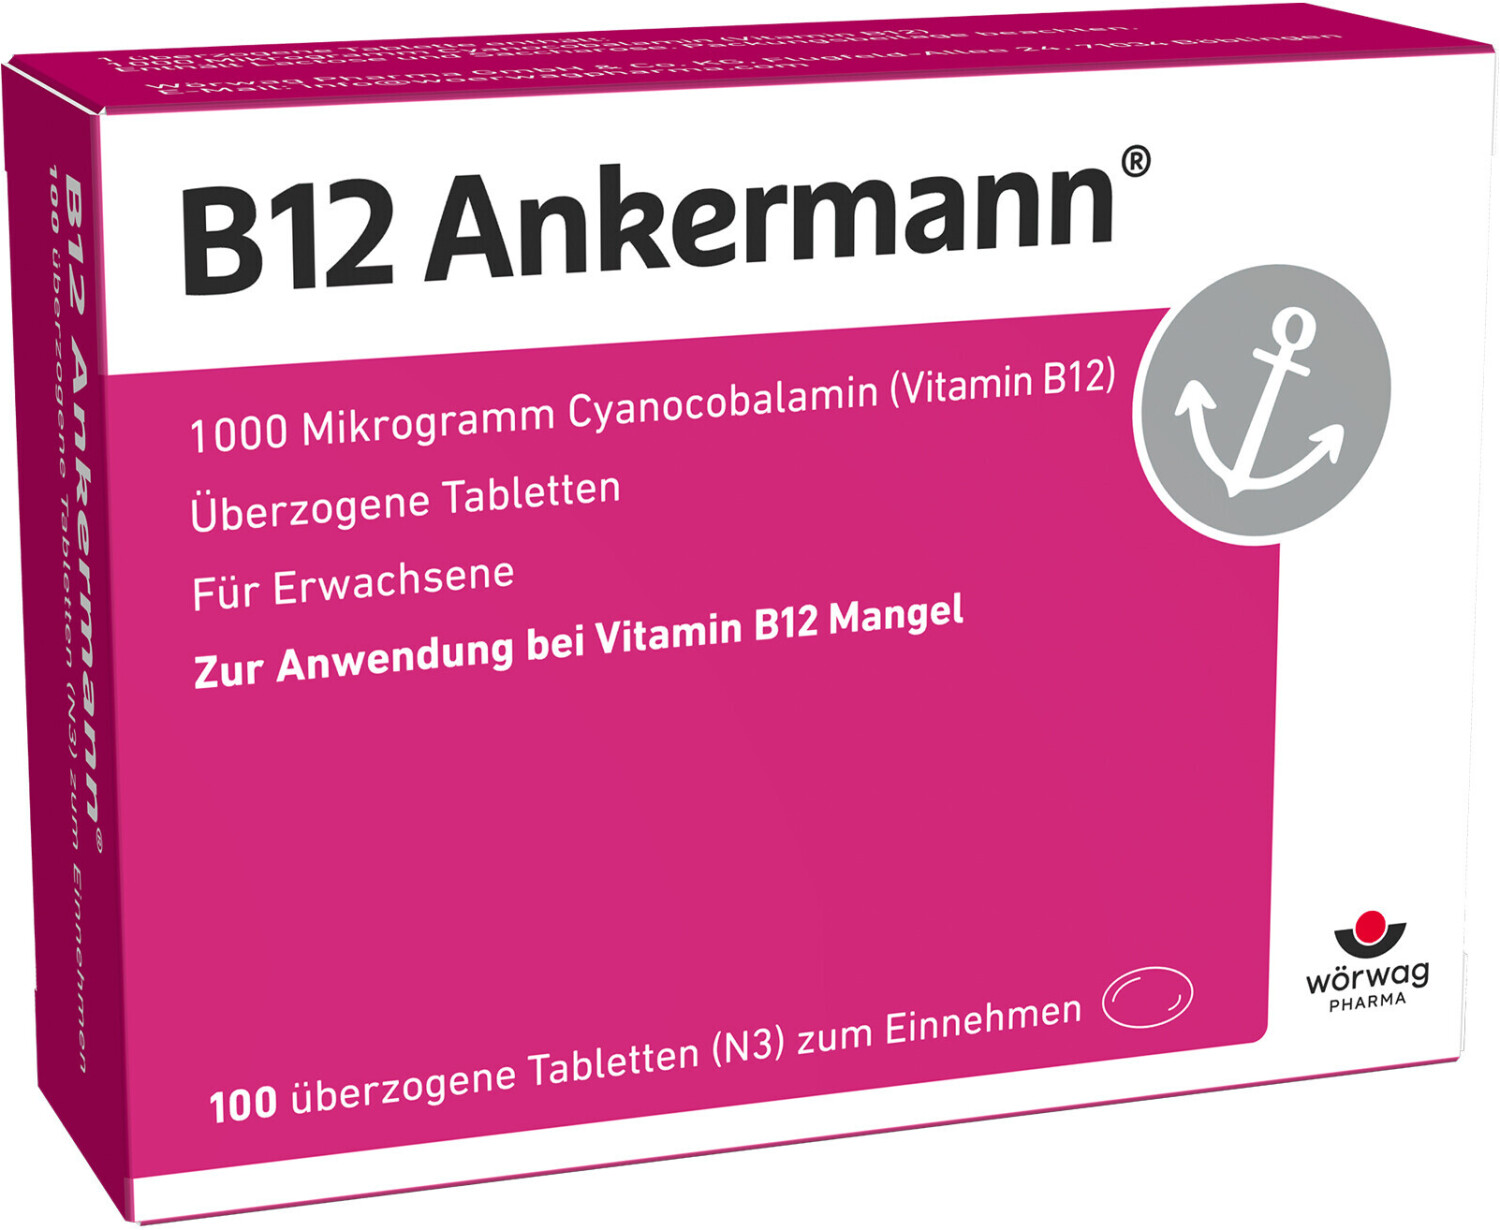 https://cdn.idealo.com/folder/Product/771/4/771452/s1_produktbild_max/woerwag-pharma-b12-ankermann-100-stk.jpg